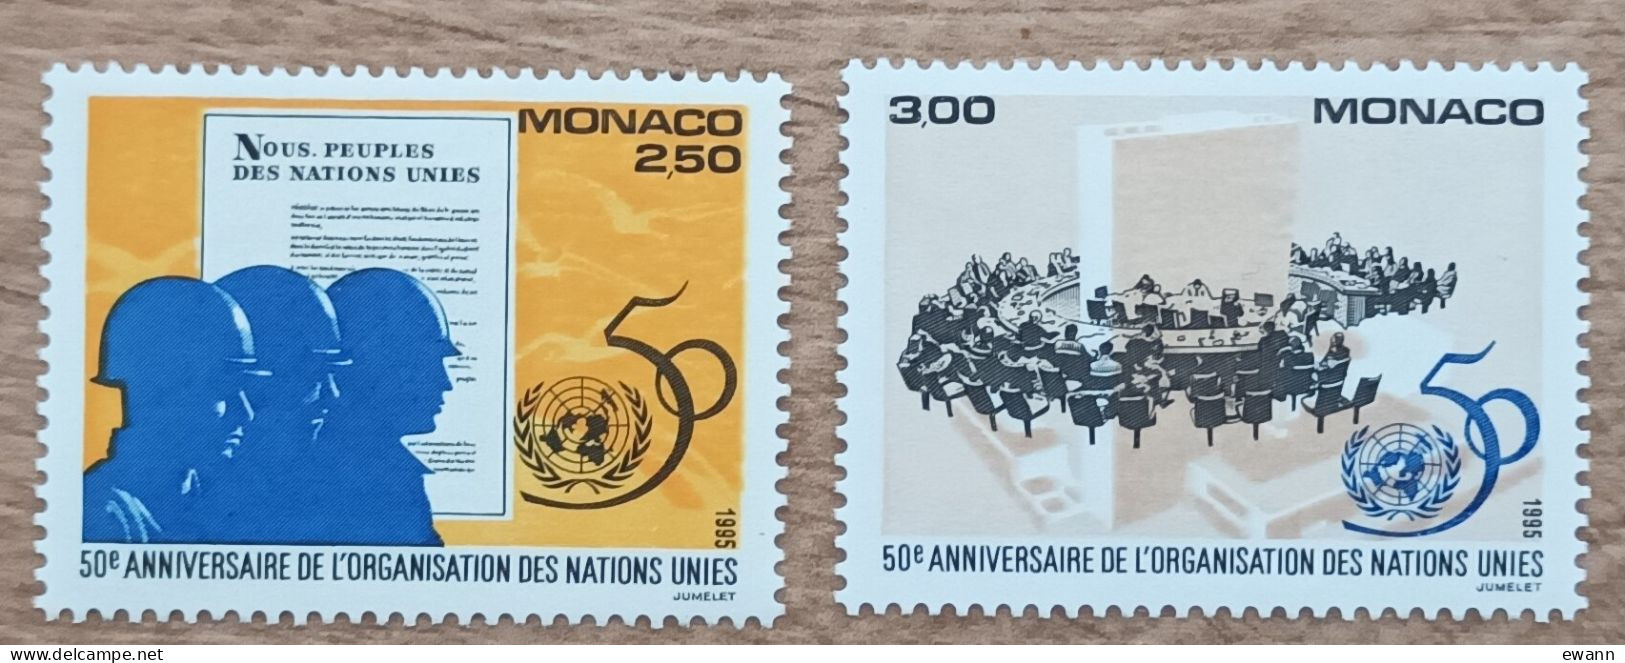 Monaco - YT N°2002, 2003 - 50e Anniversaire De L'Organisation Des Nations Unies / ONU - 1995 - Neuf - Nuevos